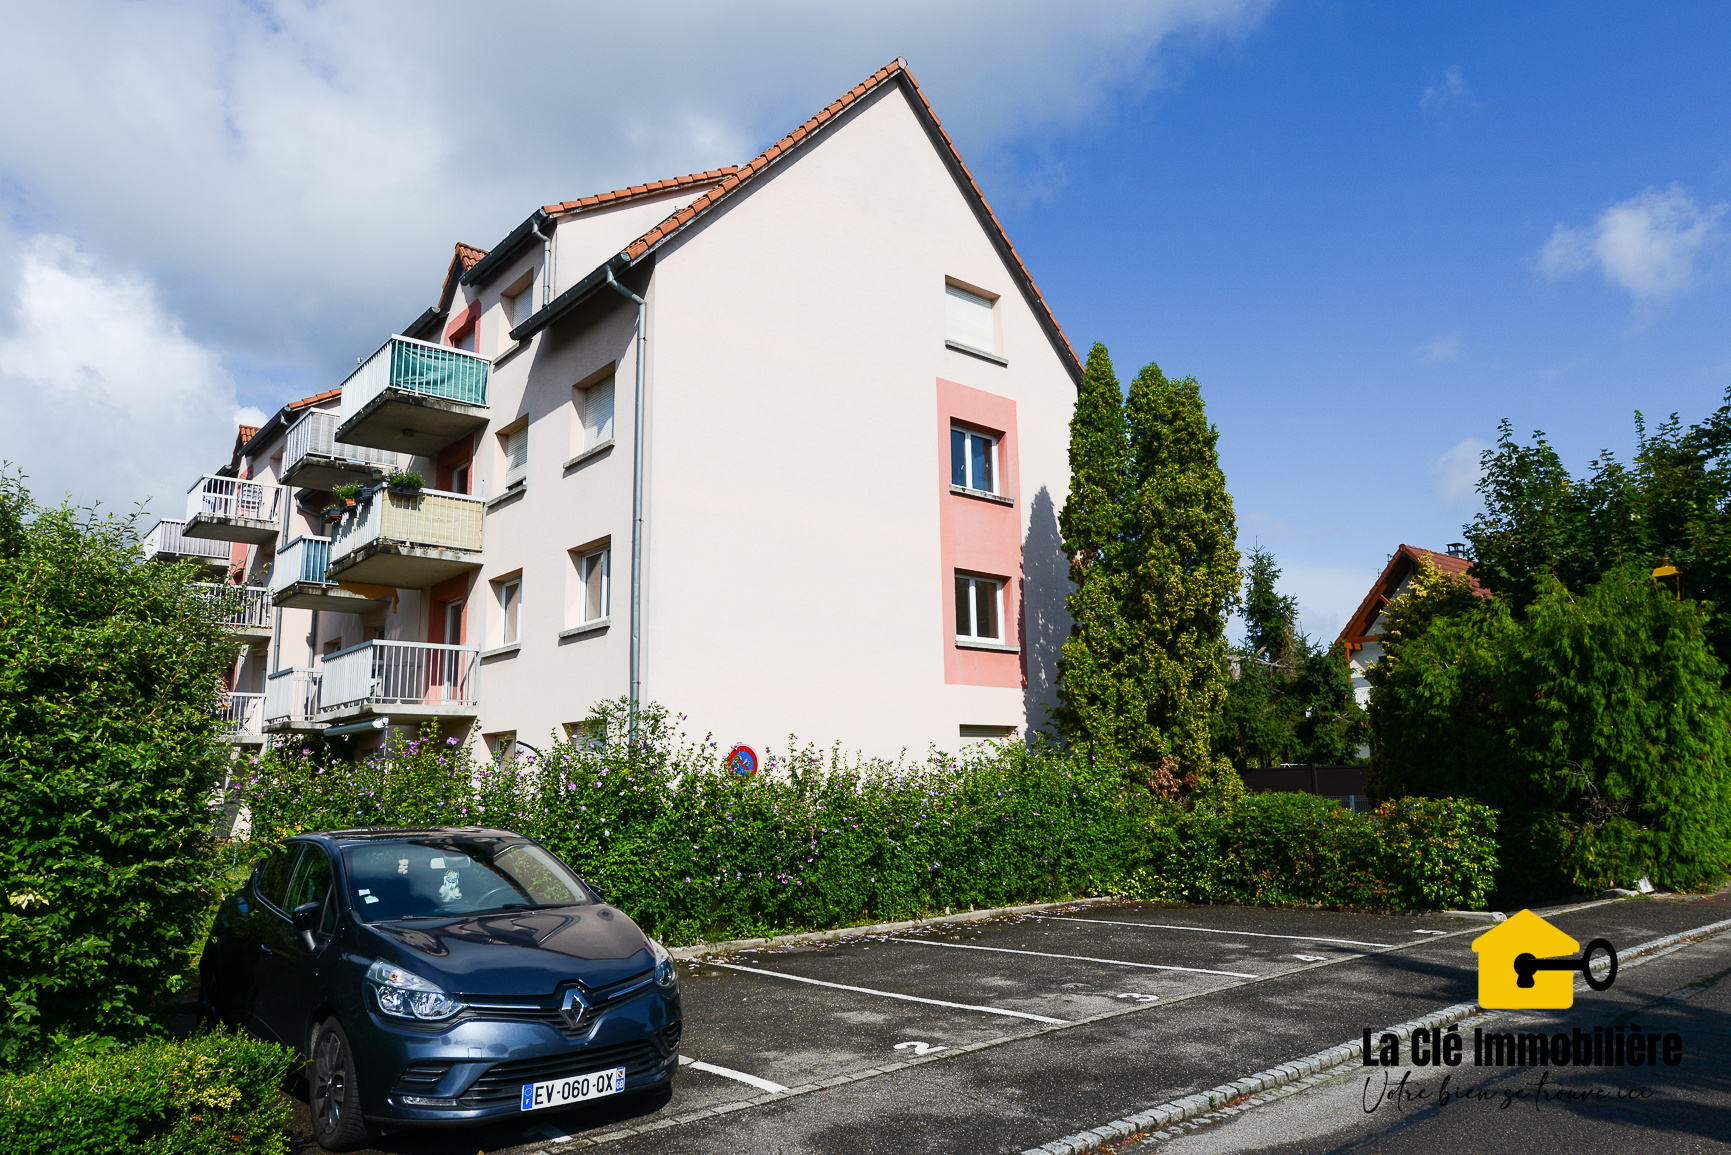 Appartement de Type F3 à Blotzheim 